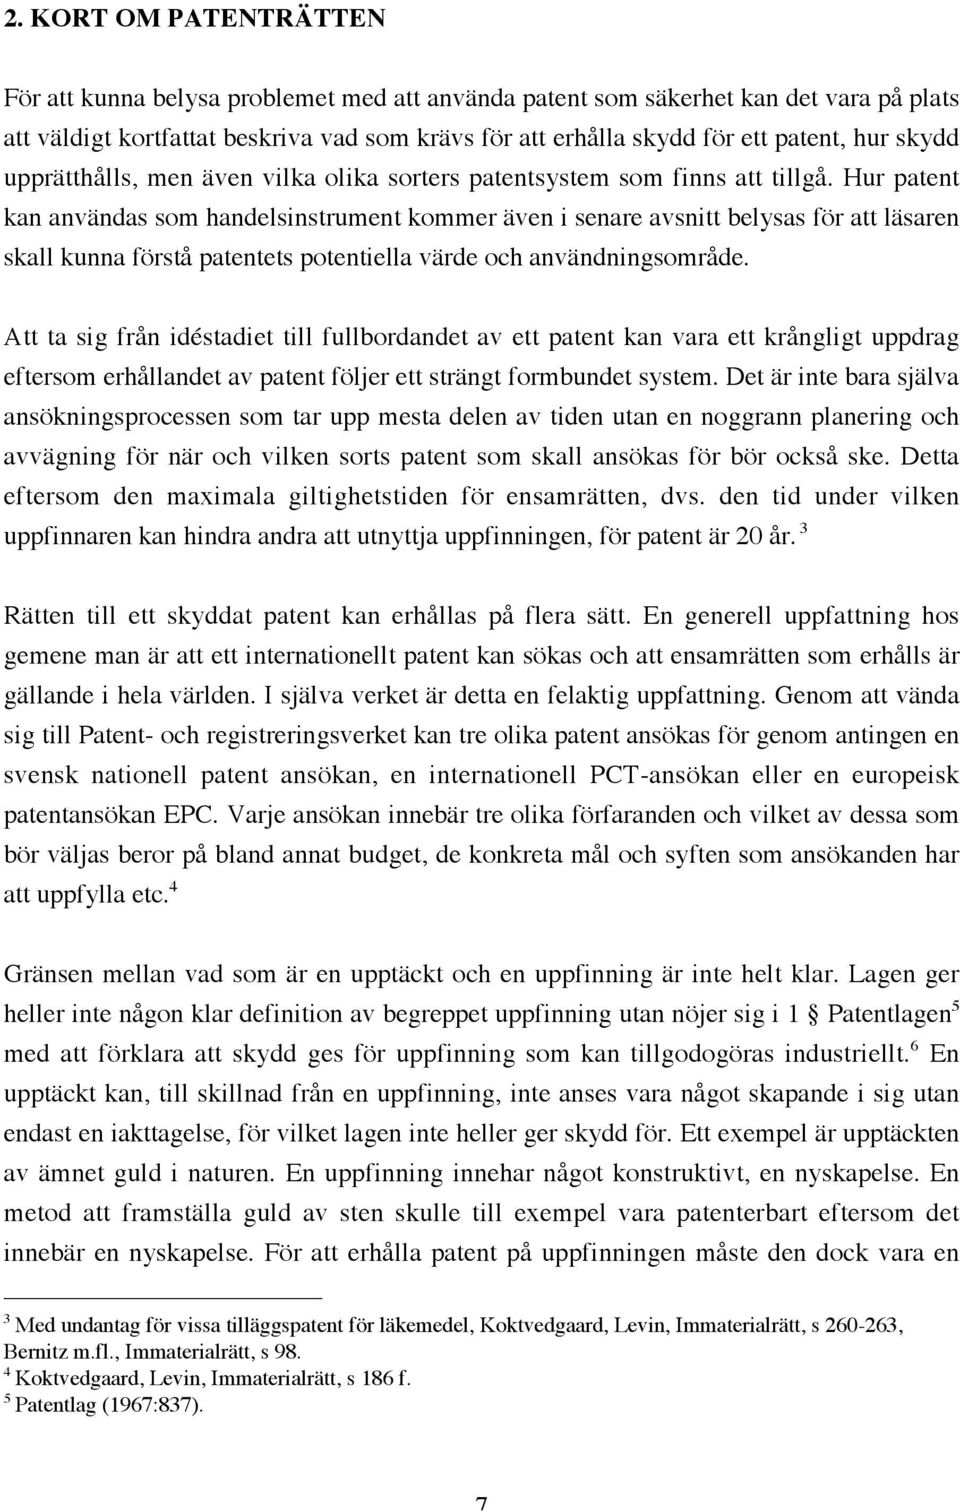 KREDITSÄKERHET I PATENT - PDF Gratis nedladdning